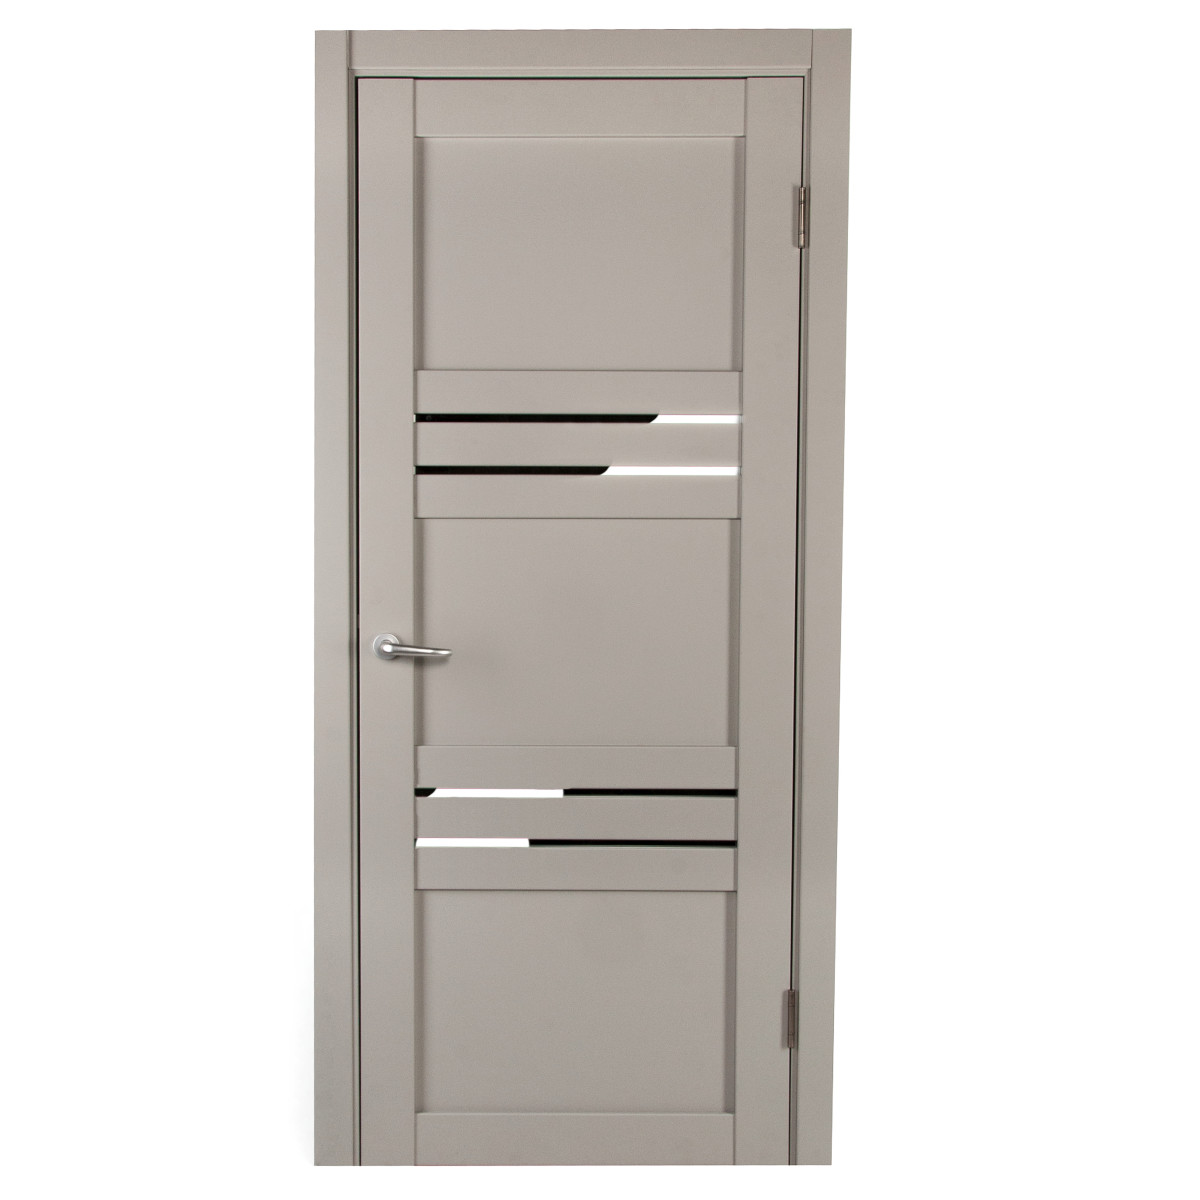 Дверь межкомнатная с фурнитурой Астерия 80х200 см, Hardflex, цвет серый жемчуг